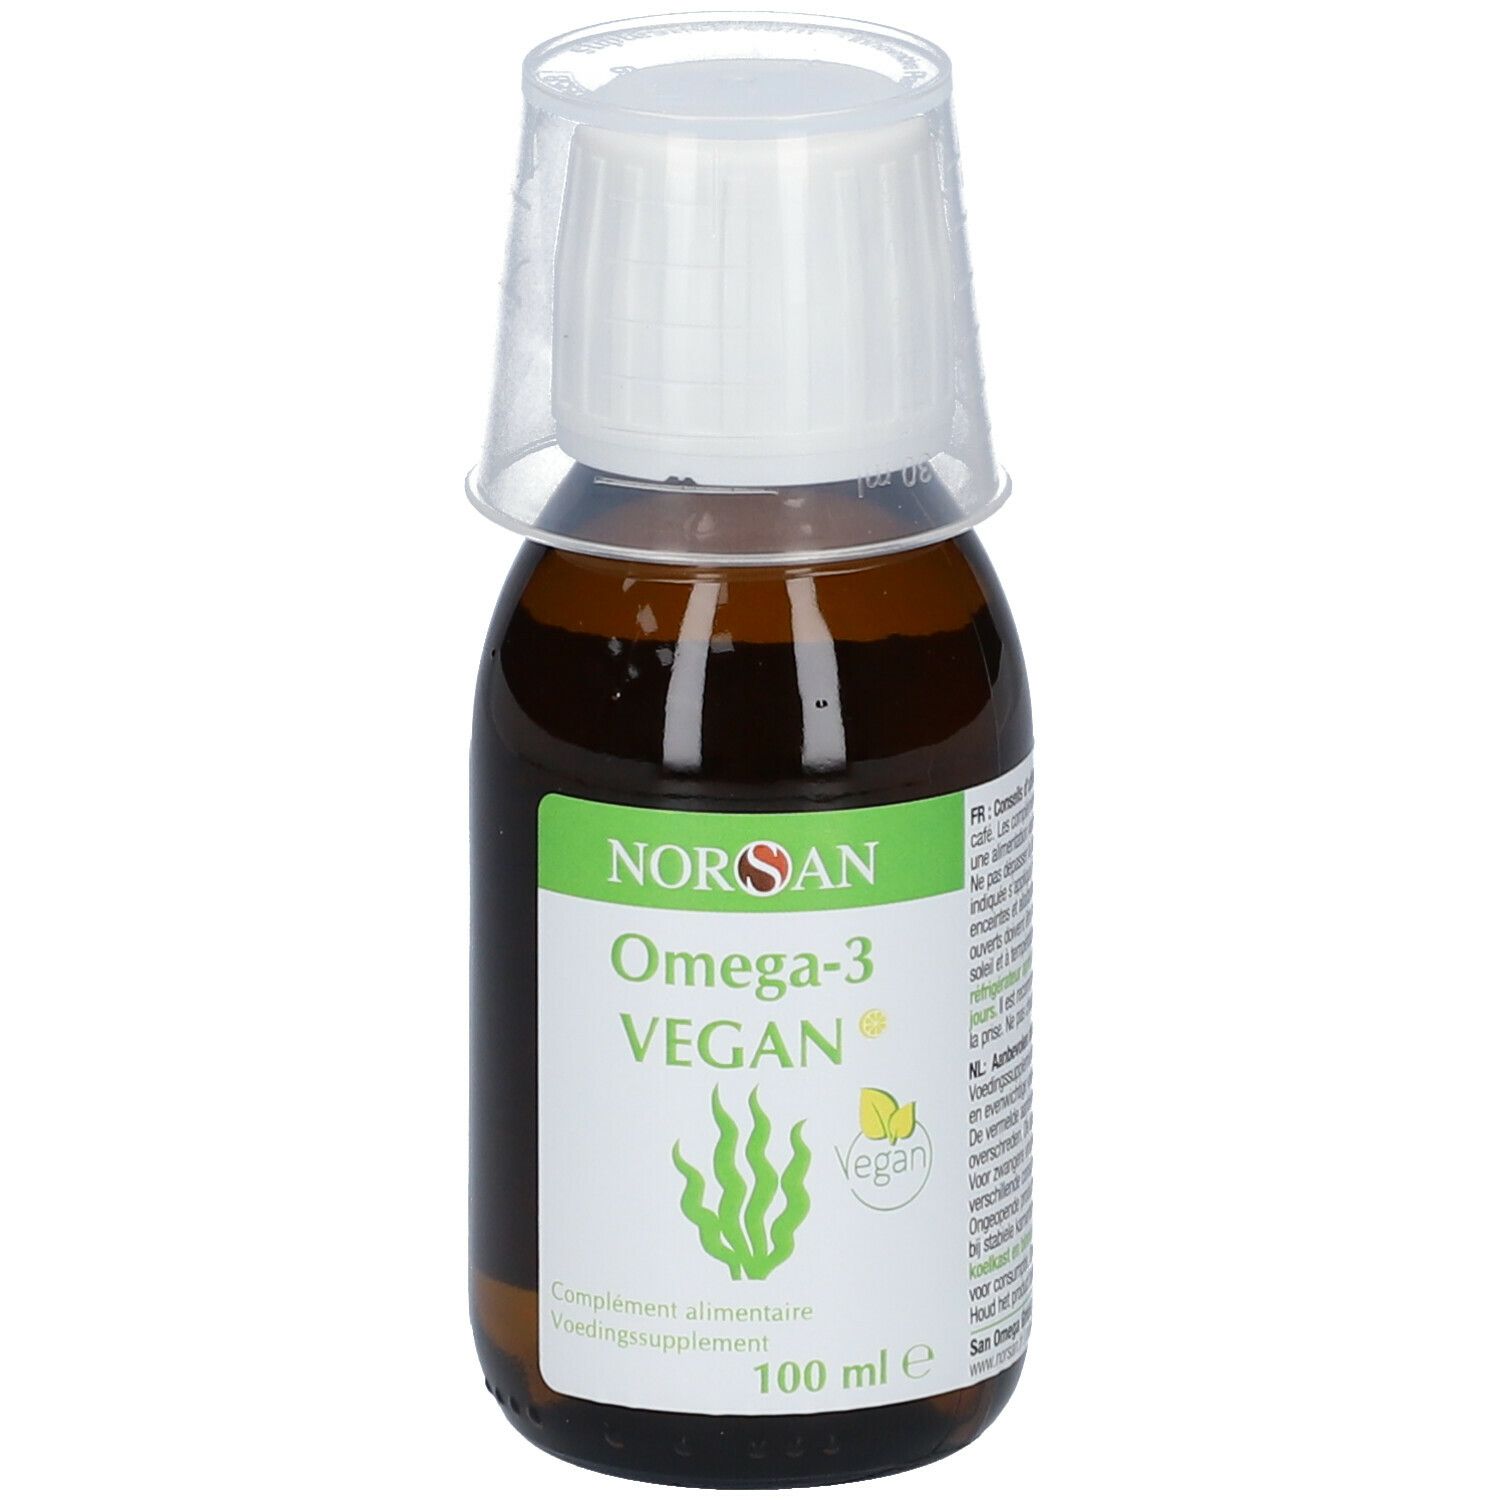 NORSAN Premium omega 3 vegan huile d'algues 100 ml / 2000mg oméga 3 par  dose journalière / omega3 végétalien avec EPA & DHA/vegan omega 3 algues :  : Hygiène et Santé